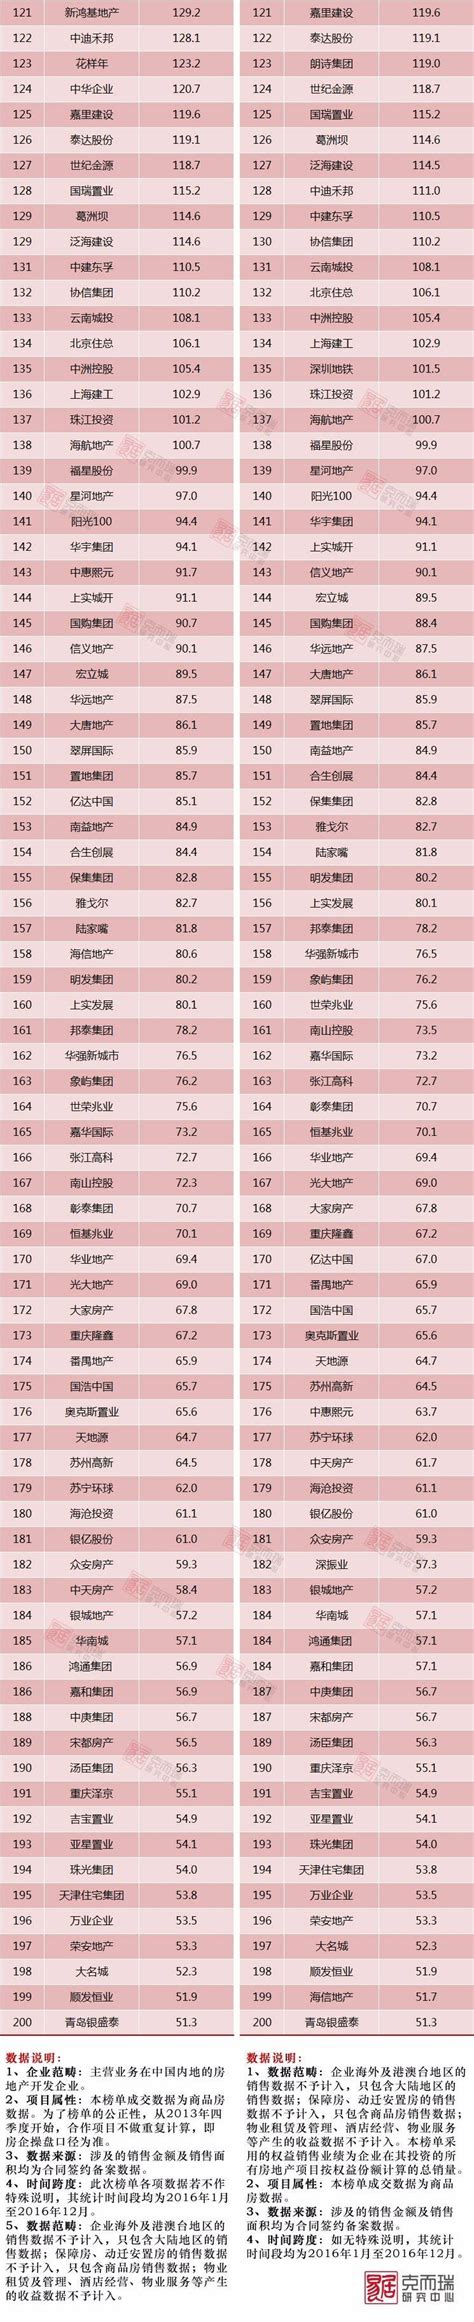 2019年7月中国房地产企业销售金额TOP50排行榜_世茂集团